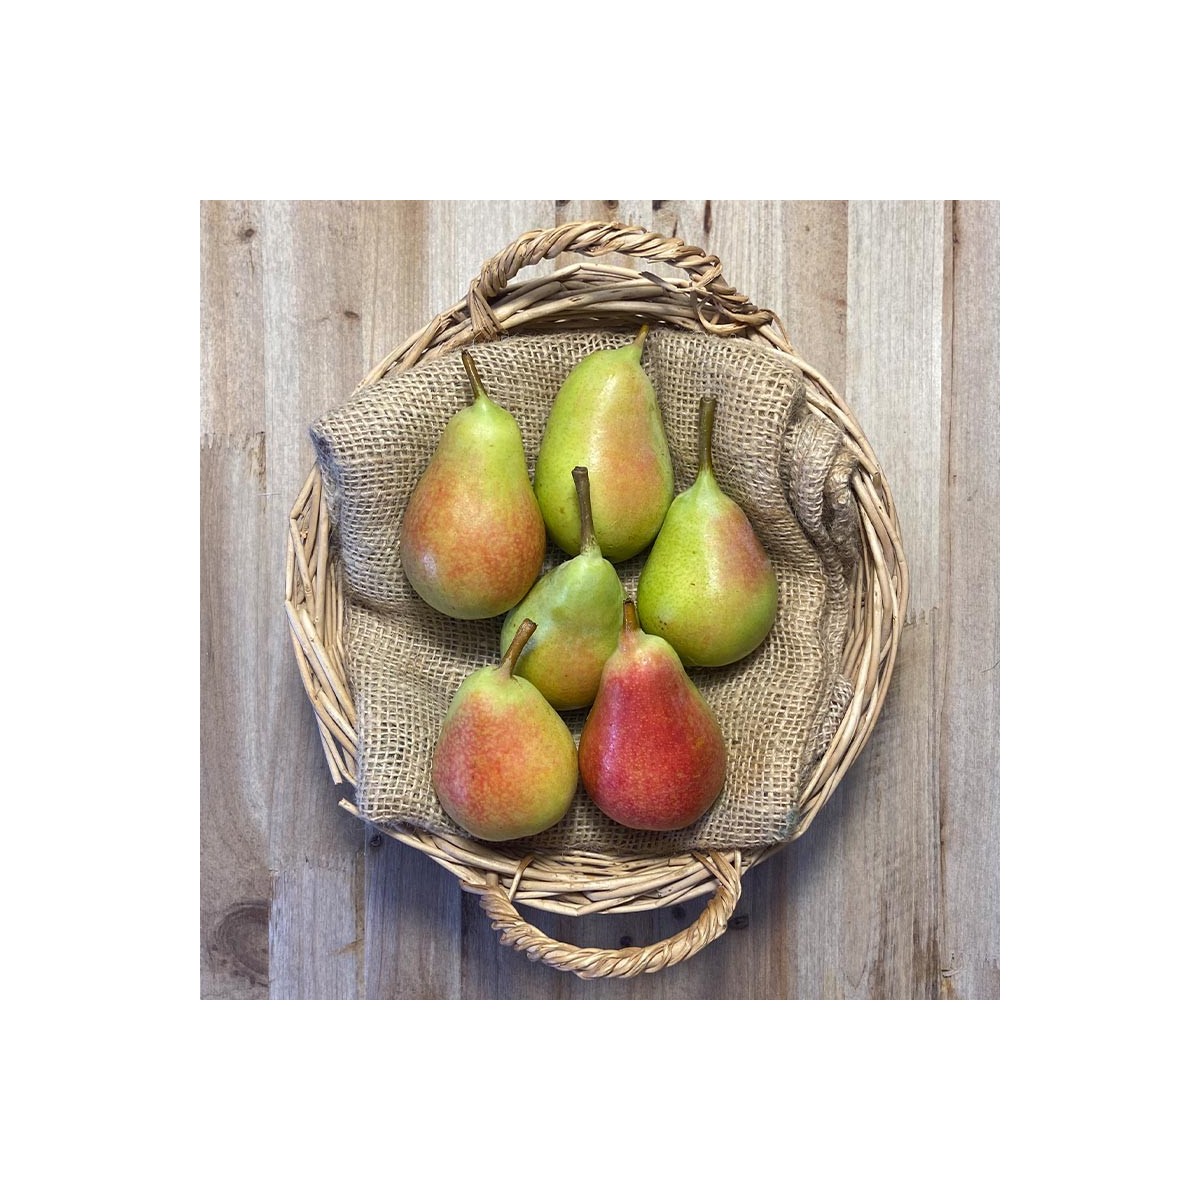 Pera Ercolina - Frutas -1- Lo mejor de la fruta